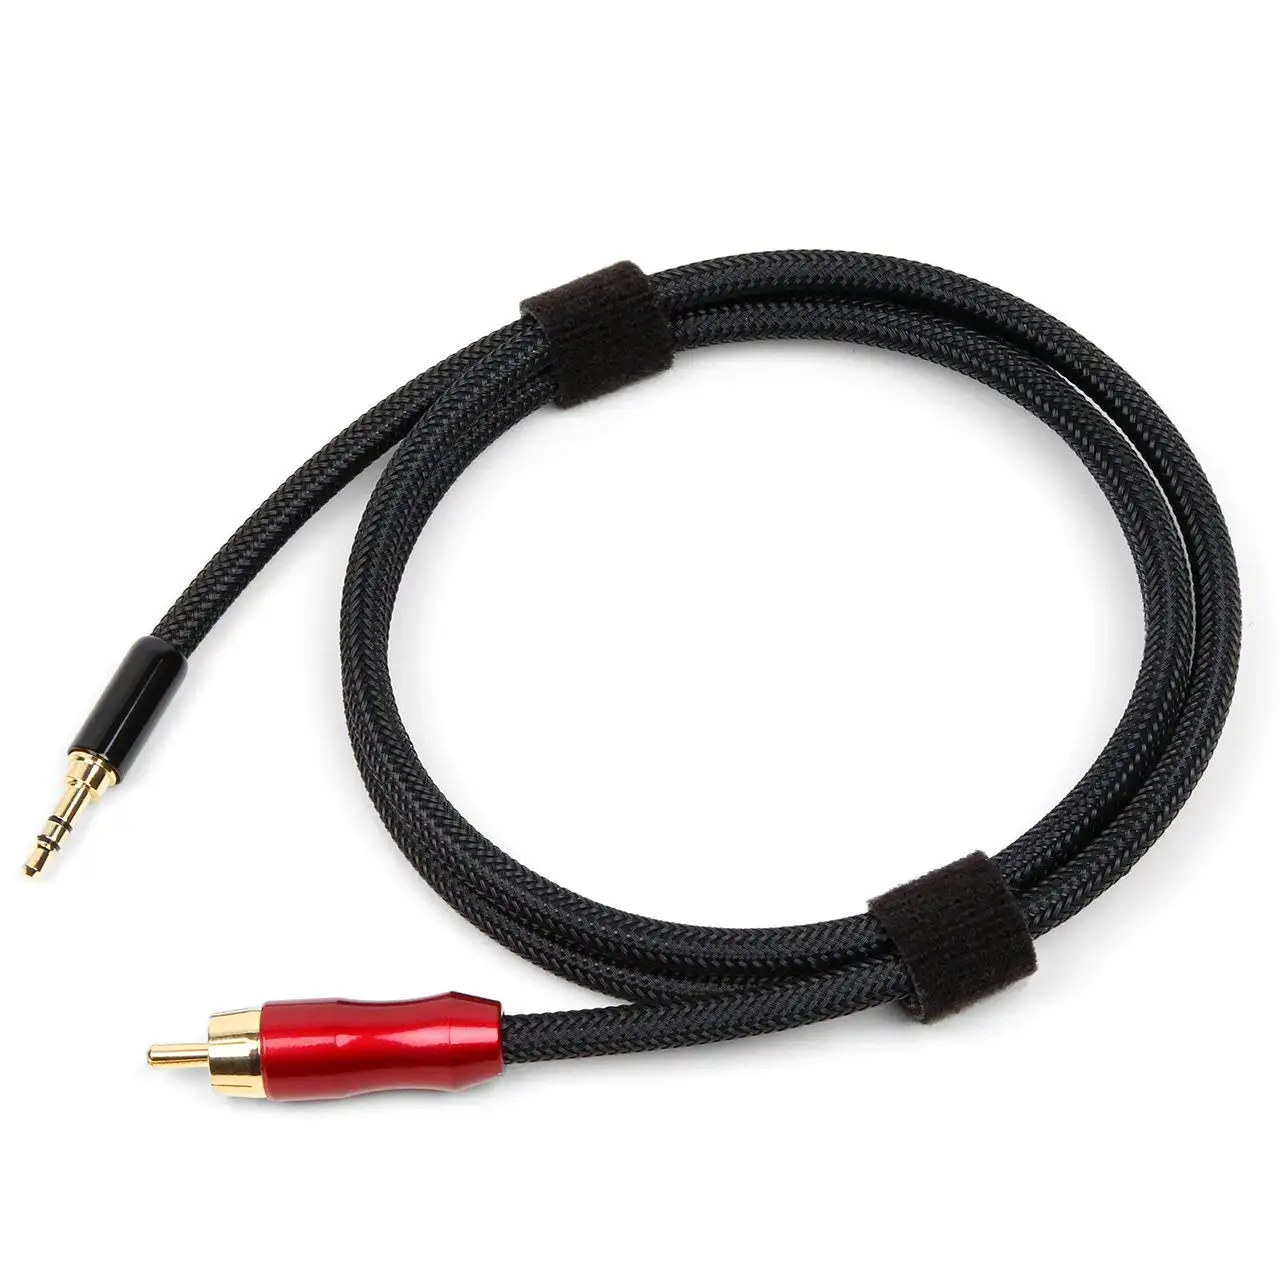 Digitales koaxiales Audio kabel 3,5mm zum SPDIF-Cinch-Lotus kopf TV-Audio-Lautsprecher kabel